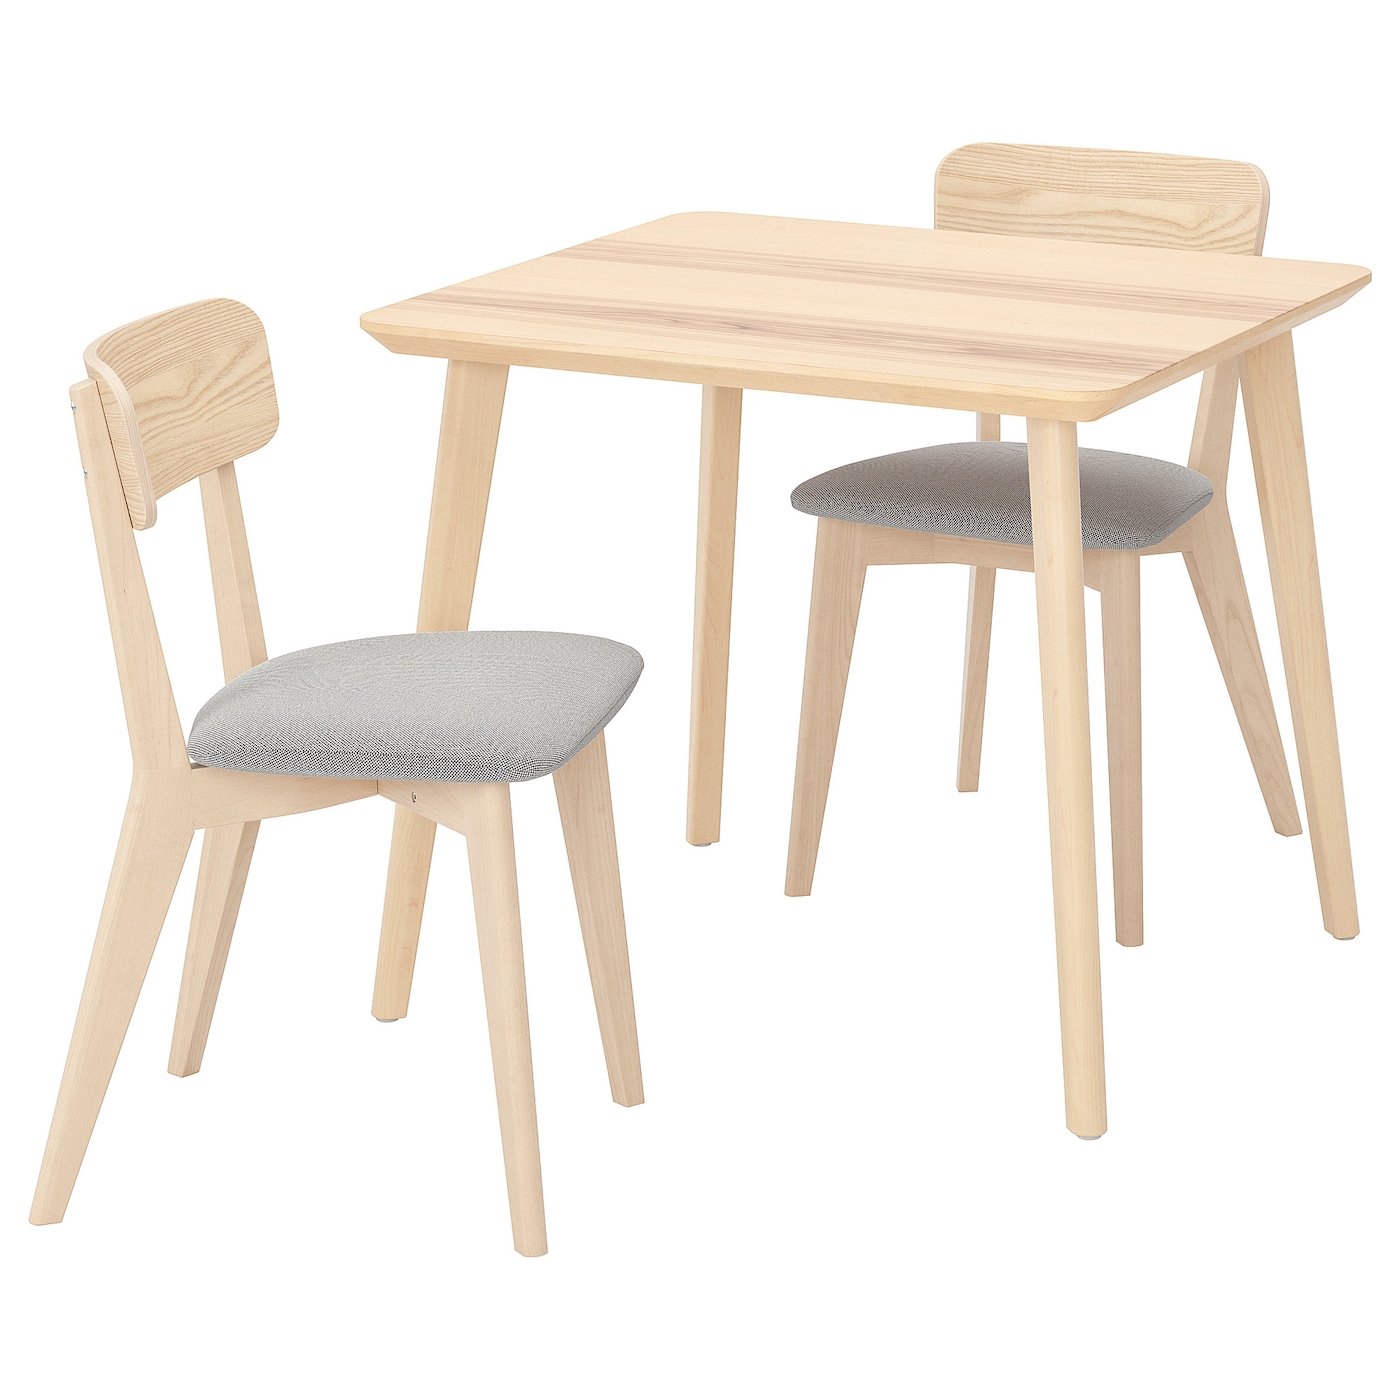 Стол и 2 стула - LISABO IKEA/ ЛИСАБО ИКЕА,  88х78 см,   под беленый дуб